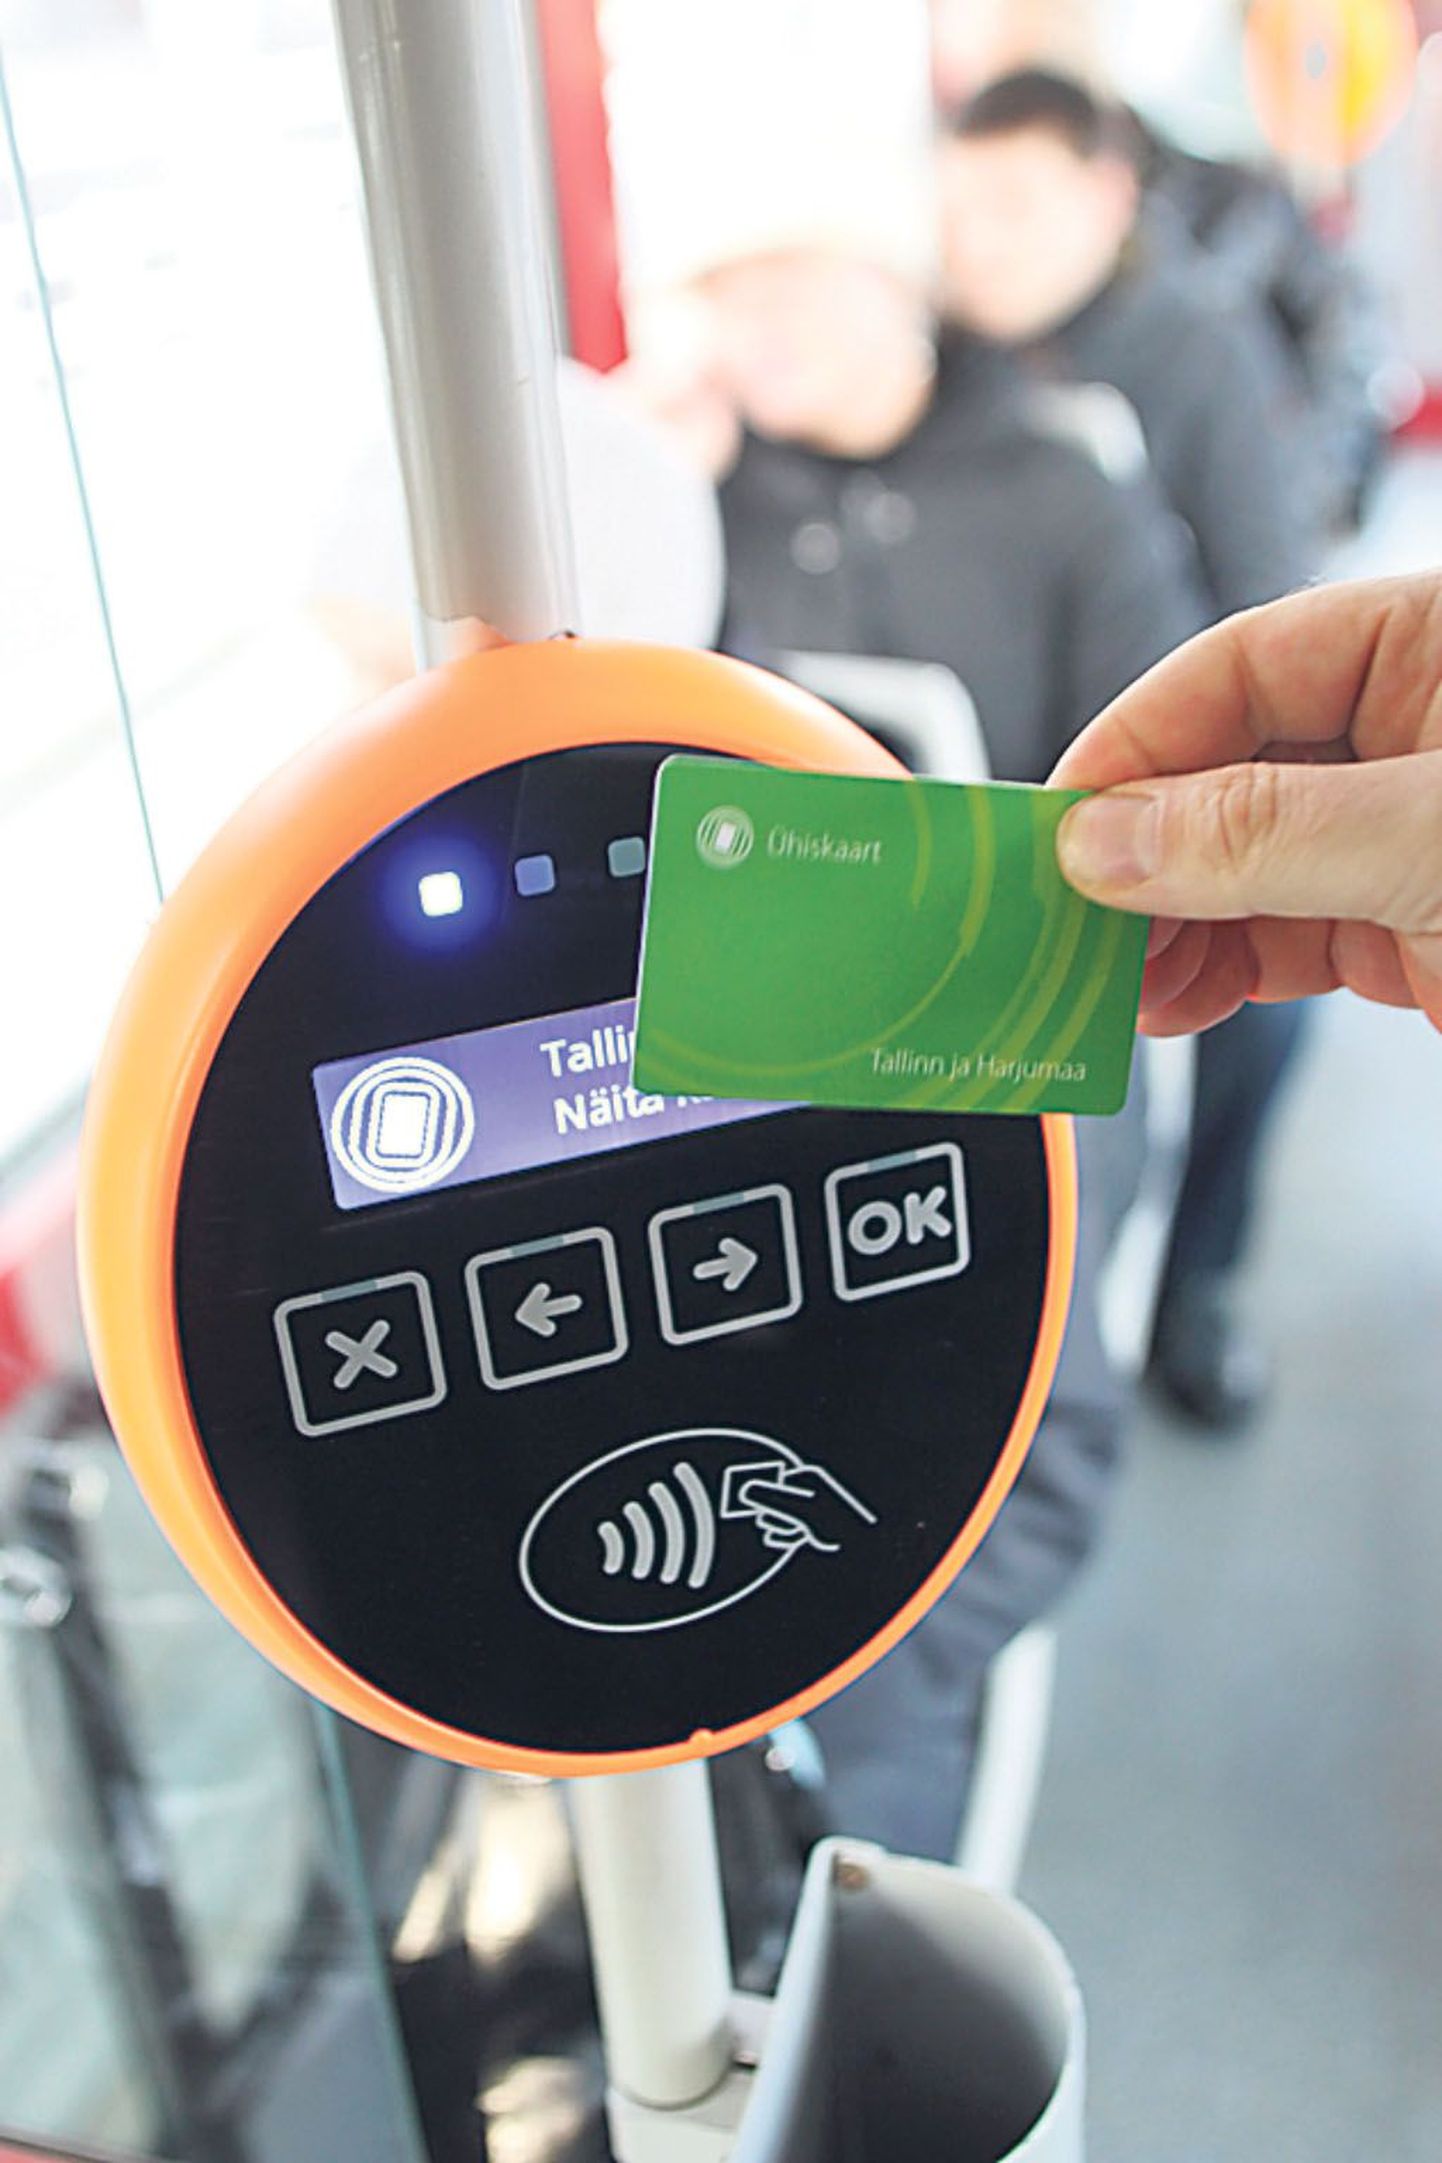 Kui osta Tallinnas sõitmiseks ühiskaart, tuleb iga kord bussi, trammi või trolli sisenedes seda validaatori ees viibutada.